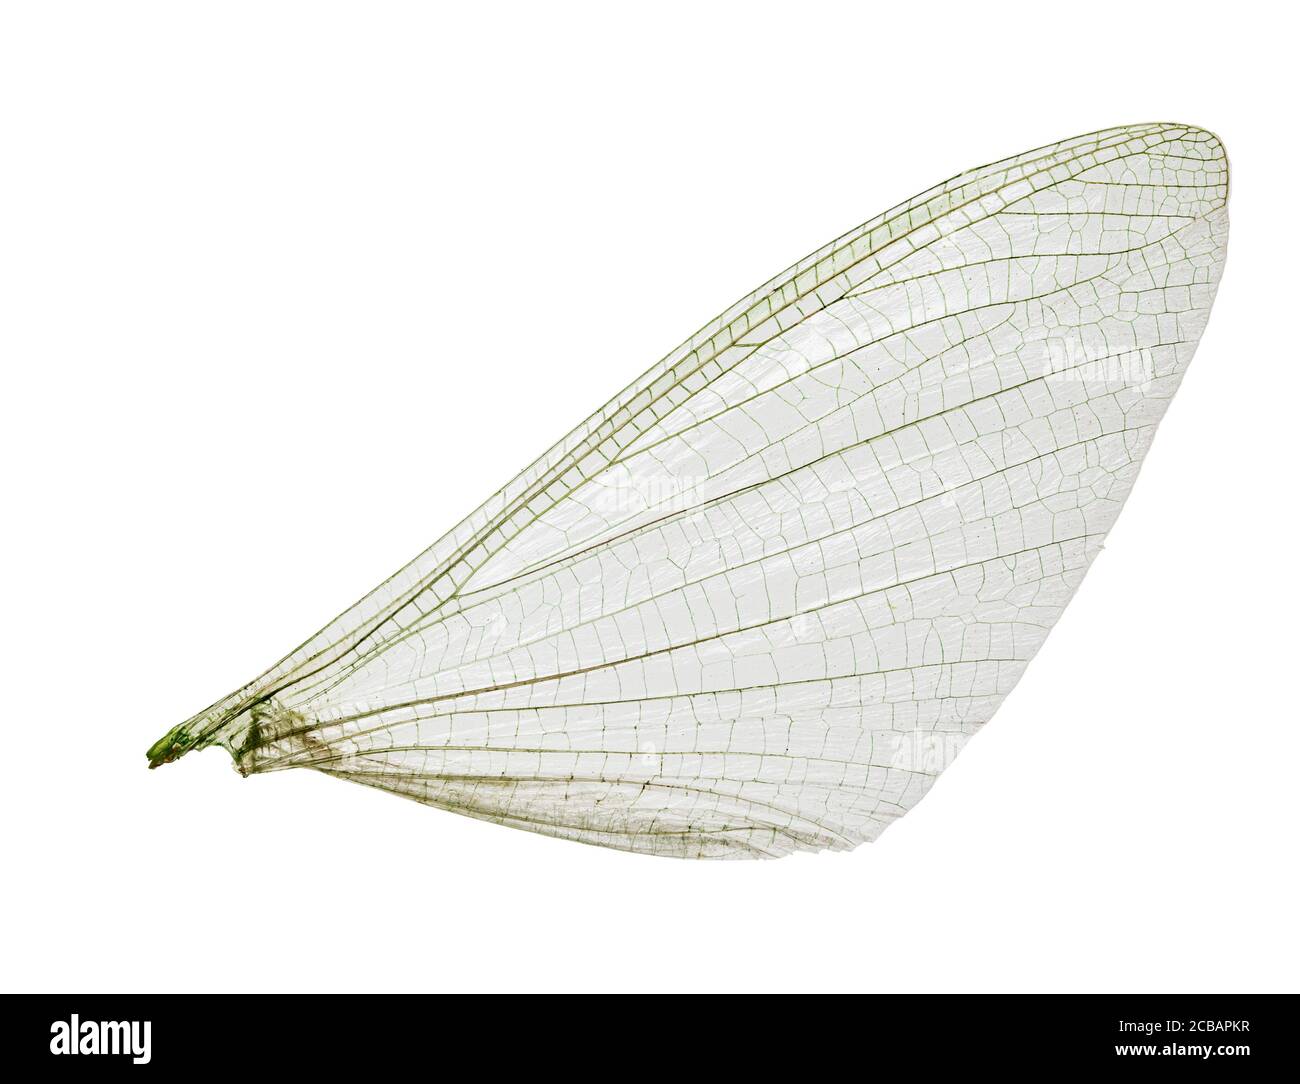 La singola ala tagliata di un insetto come un primo piano con ramificazioni fini e strutture. Foto Stock